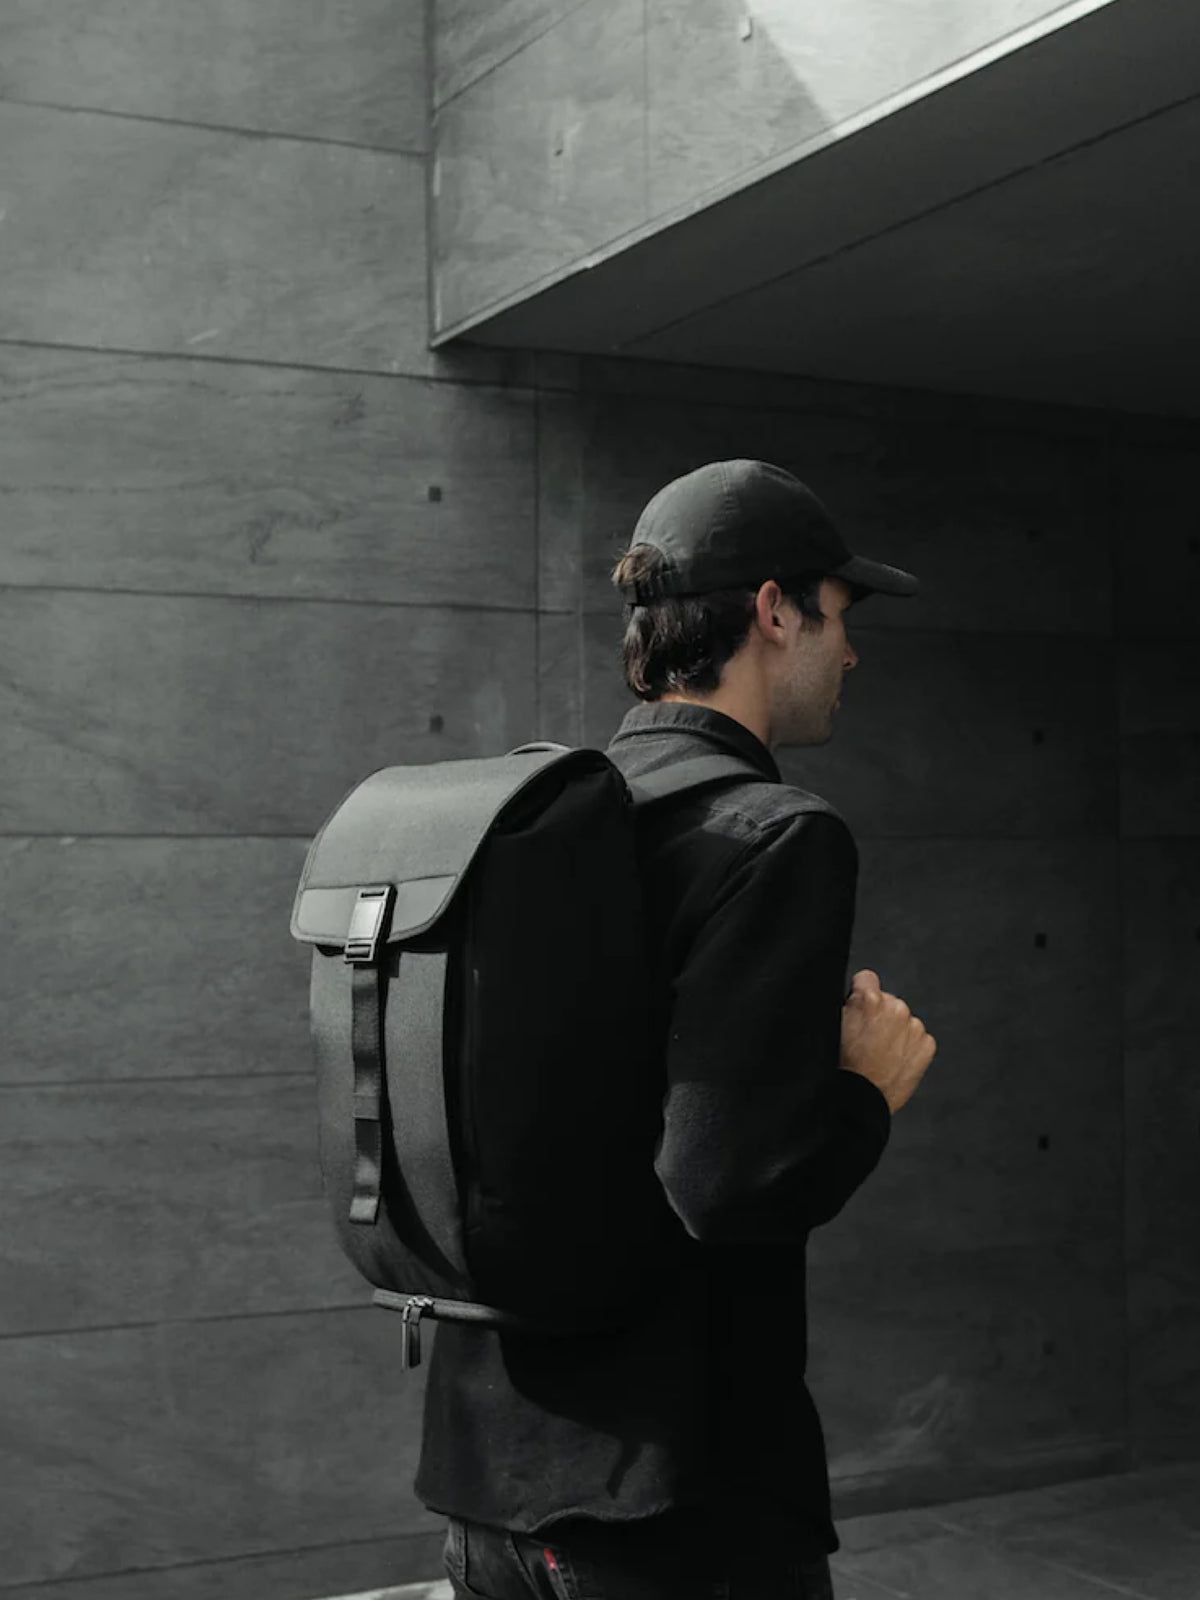 Modern Dayfarer DAYFARER Backpack Black